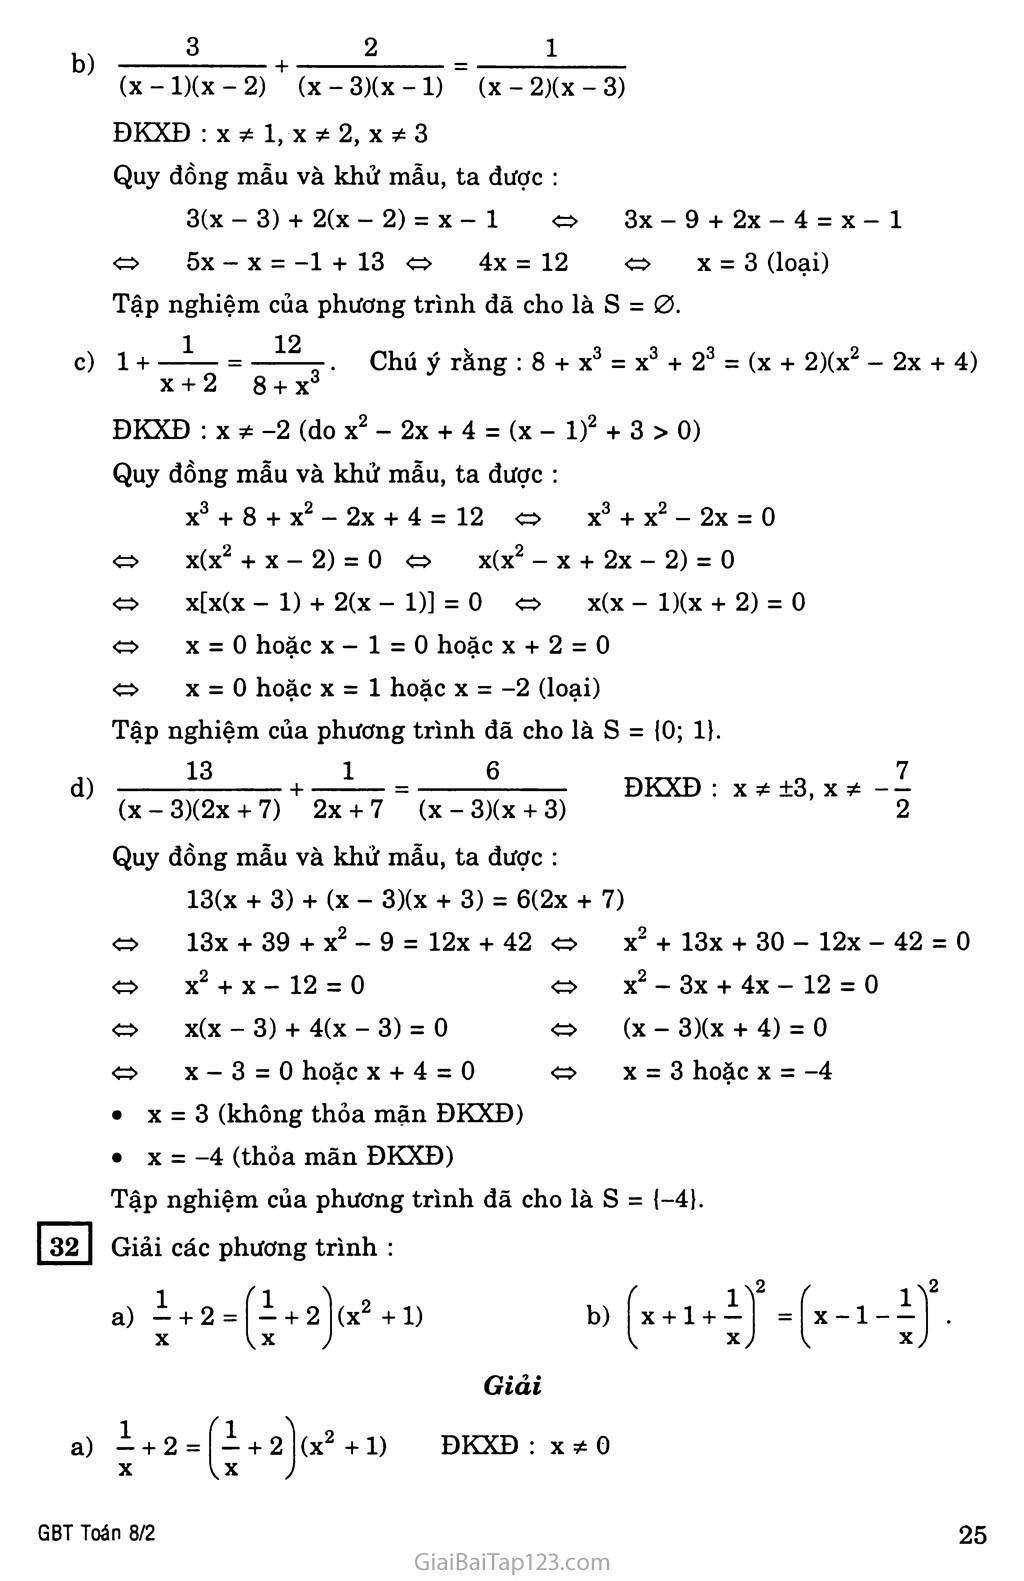 §5. Phương trình chứa ẩn ở mẫu trang 7